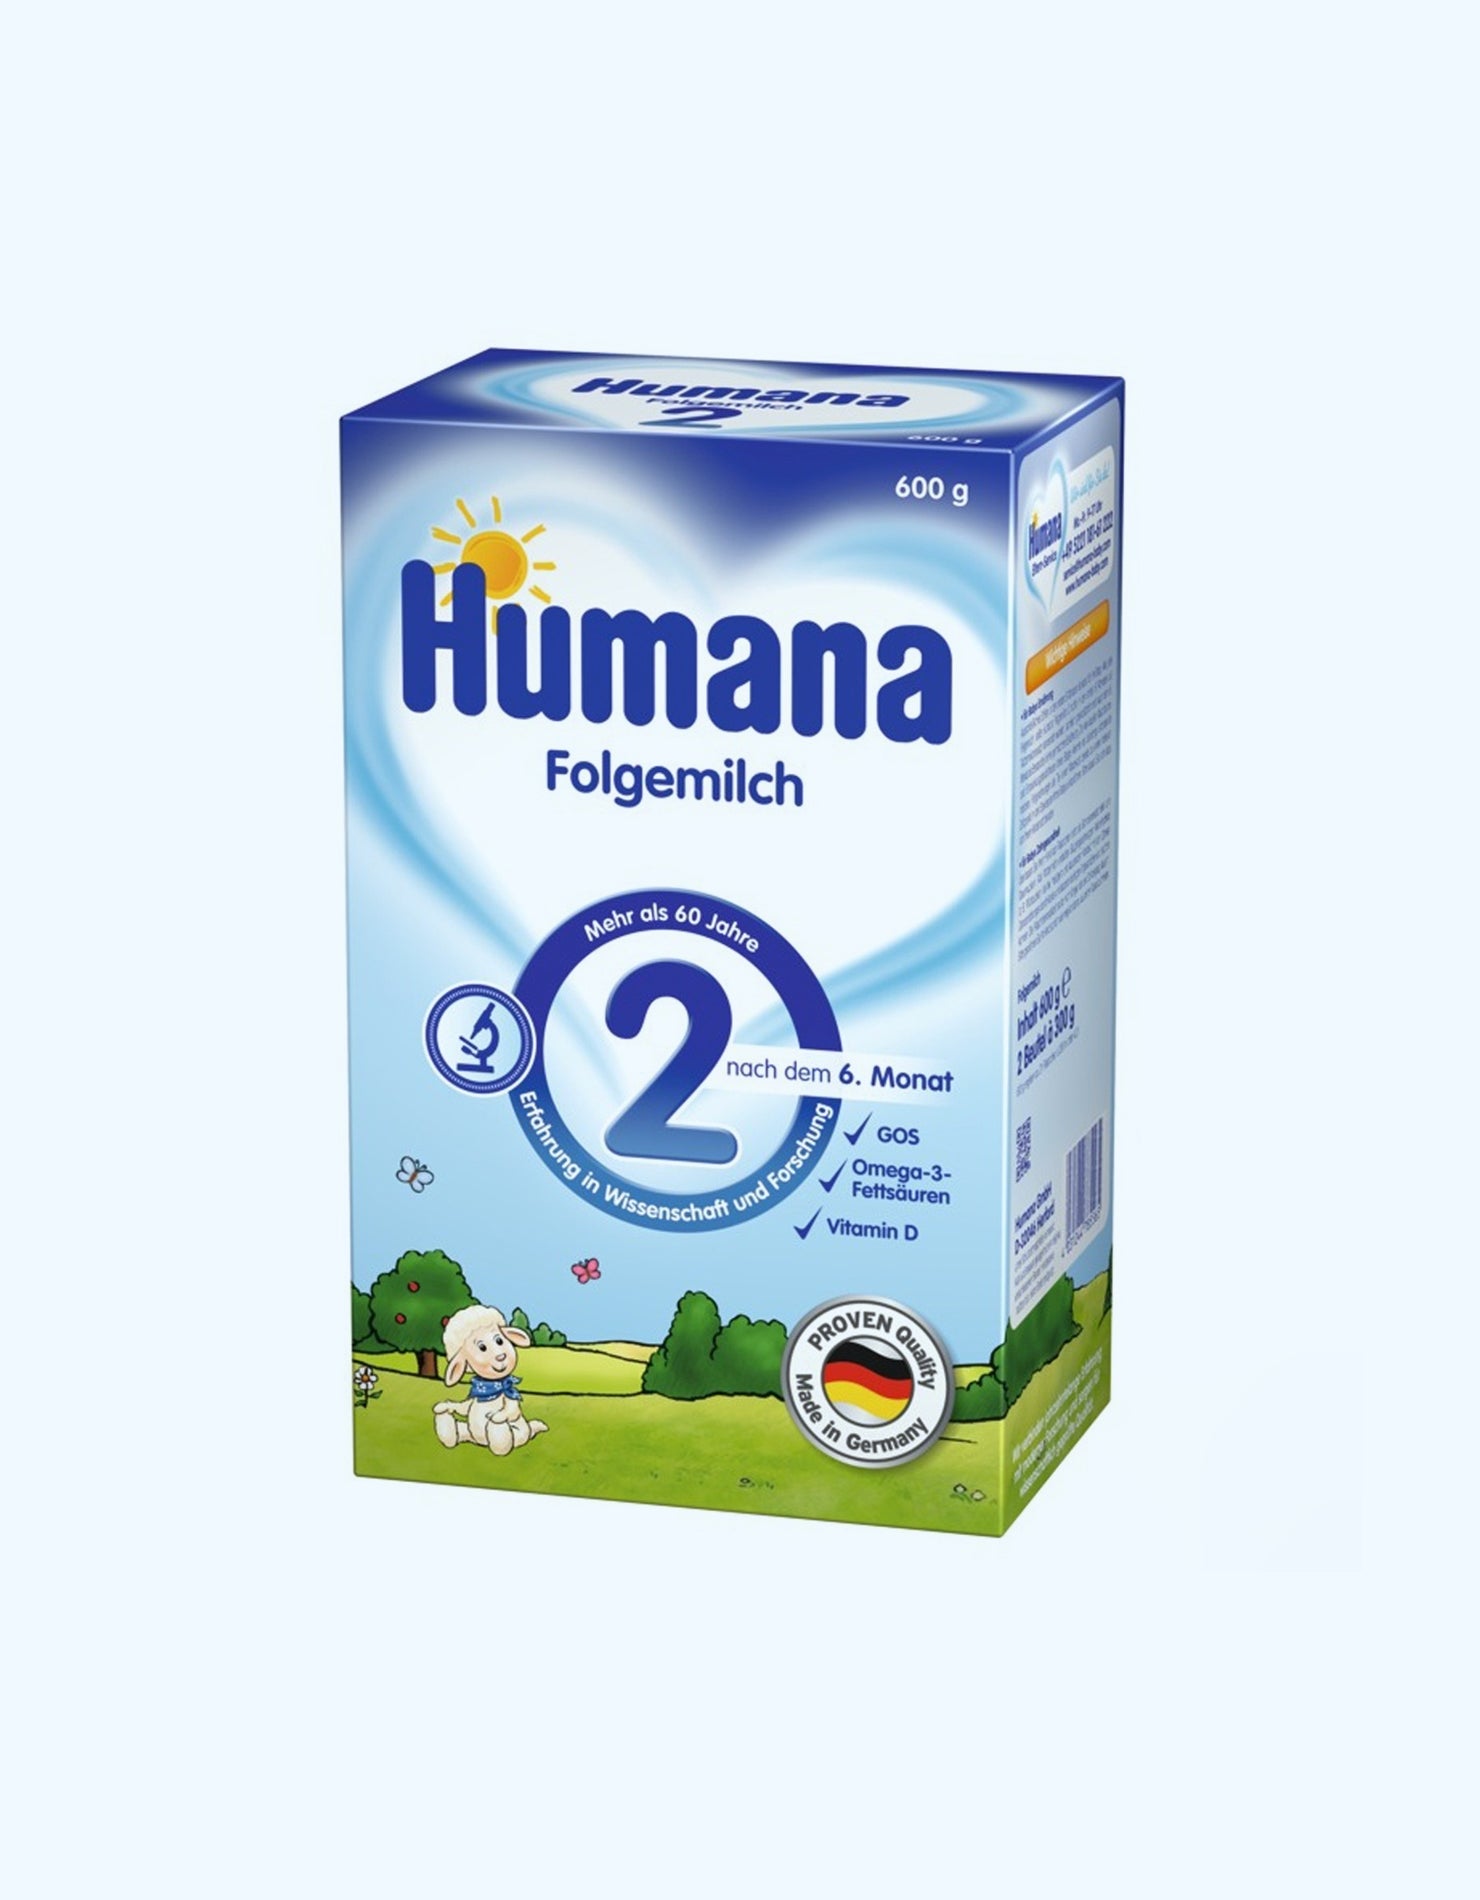 Молочная сухая смесь Humana 2, 800 г купить по низким ценам в  интернет-магазине Uzum (111952)